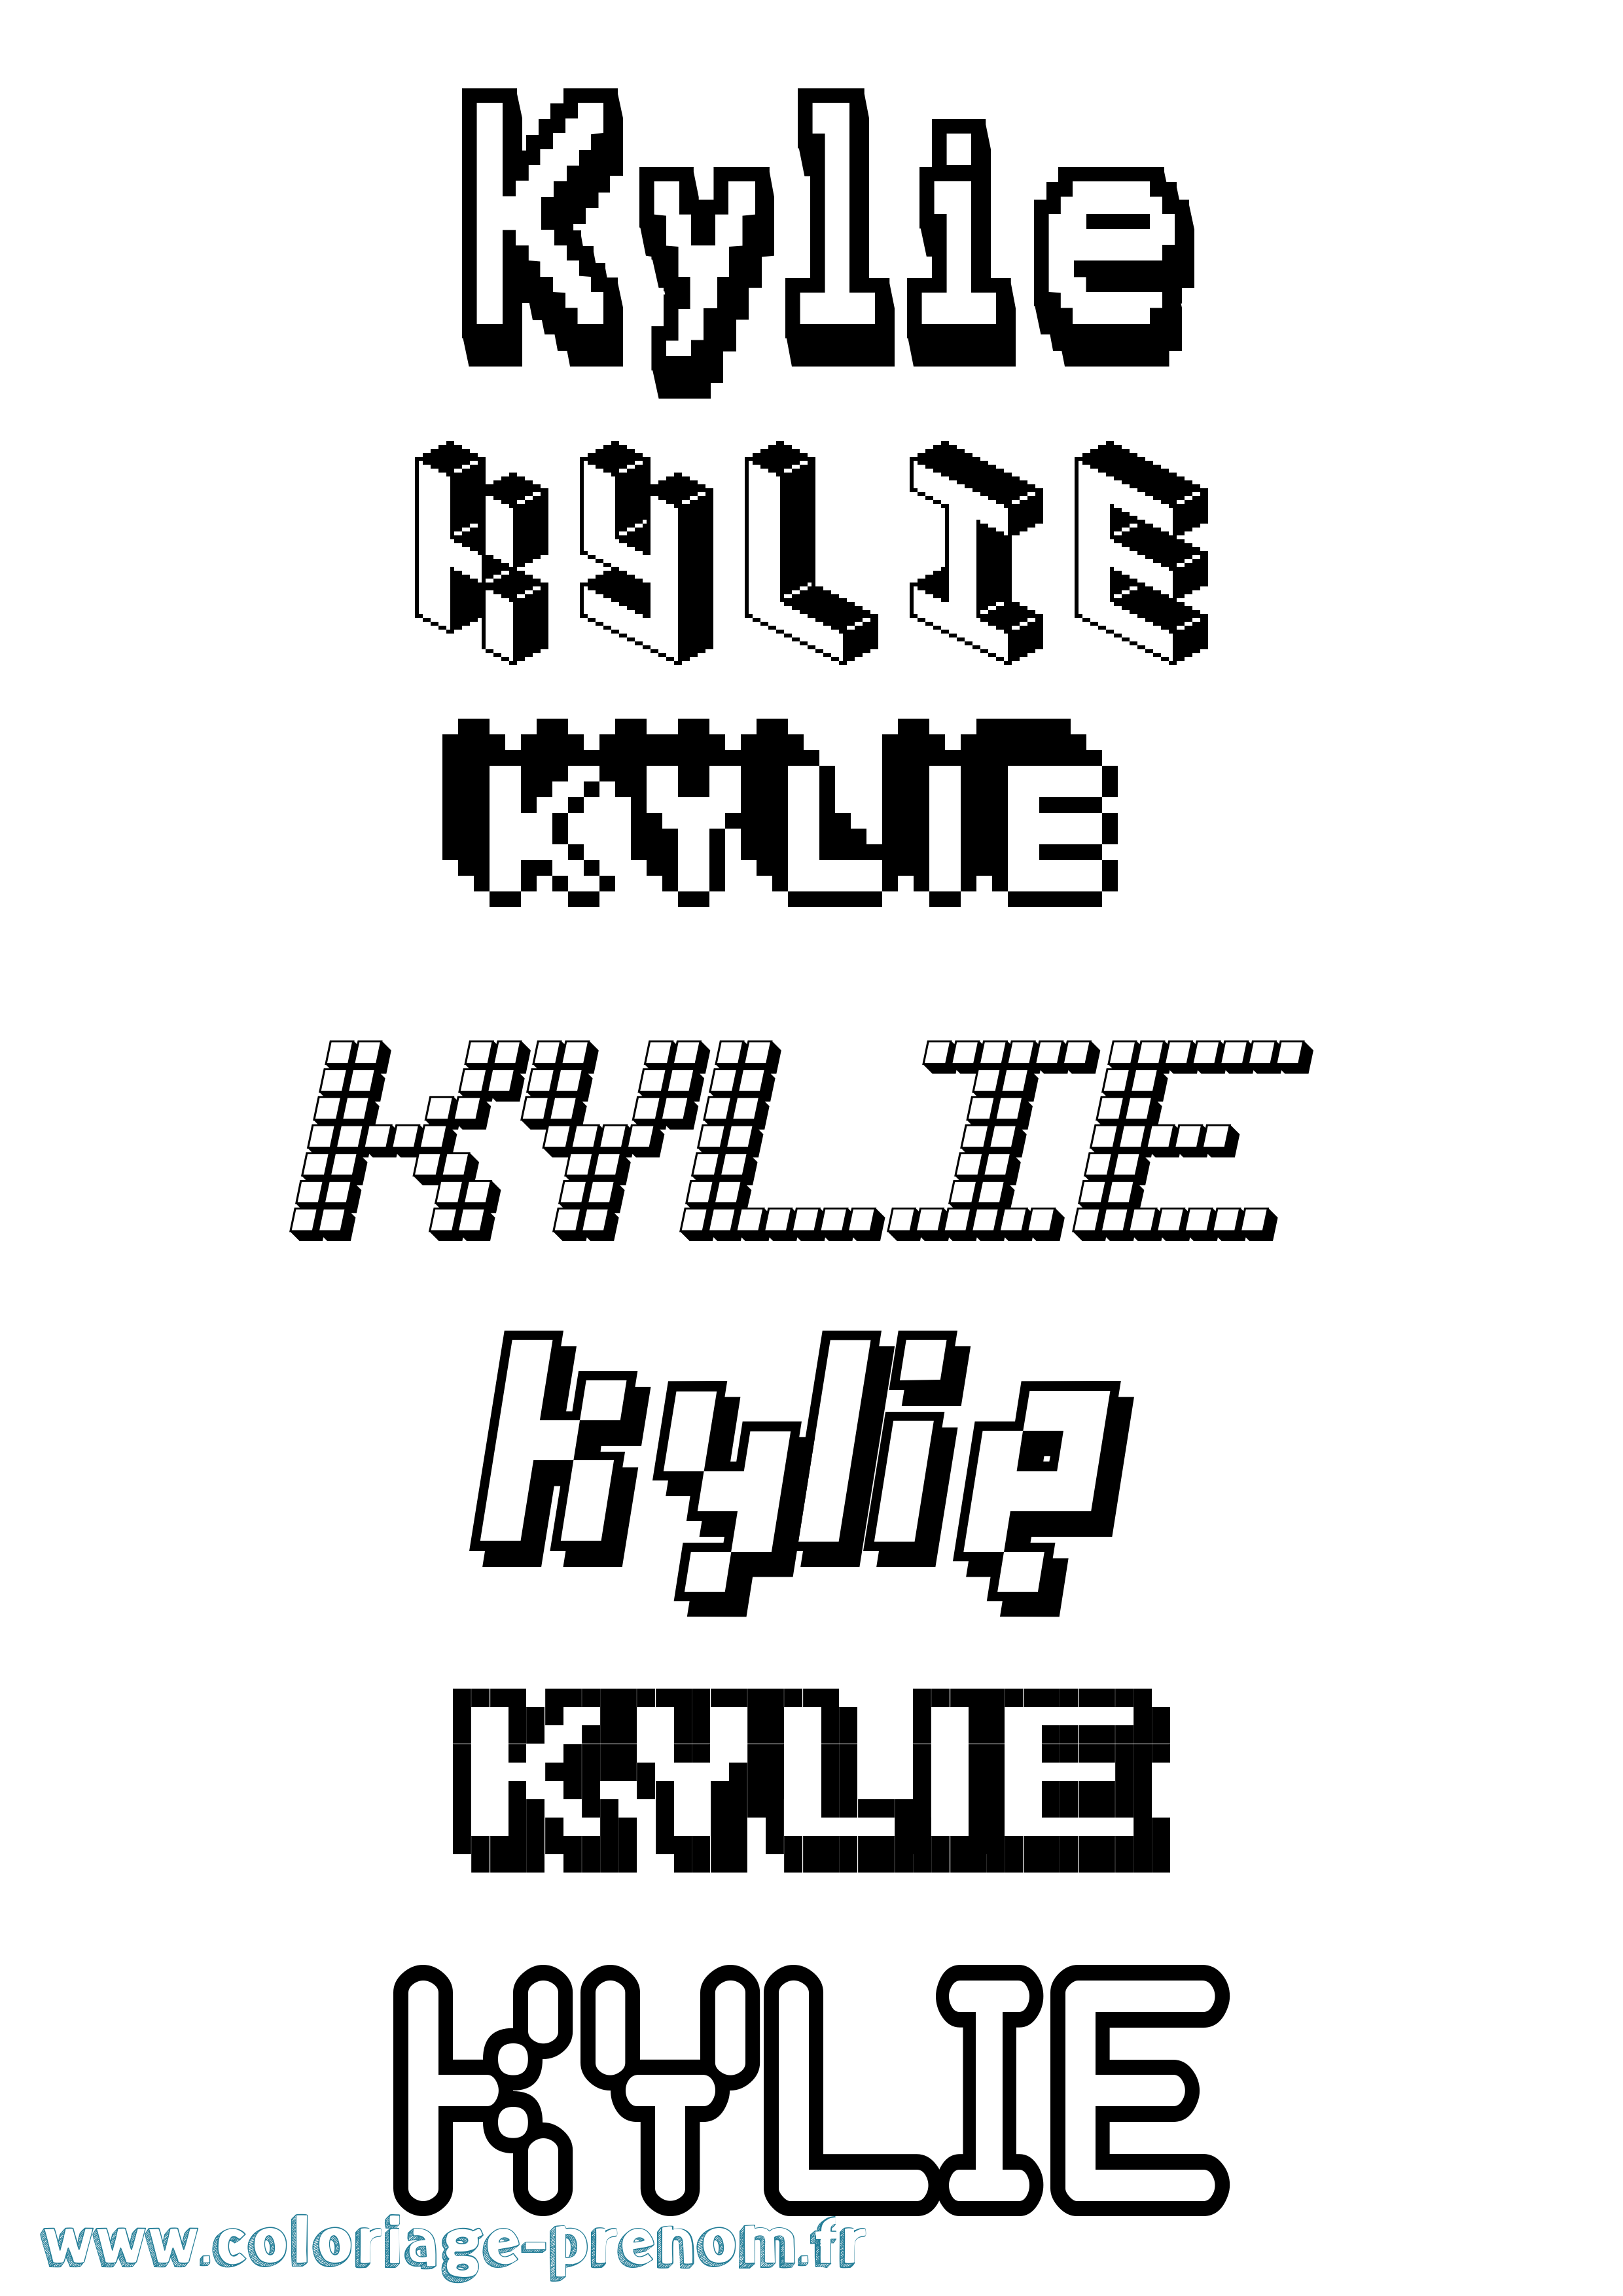 Coloriage prénom Kylie Pixel